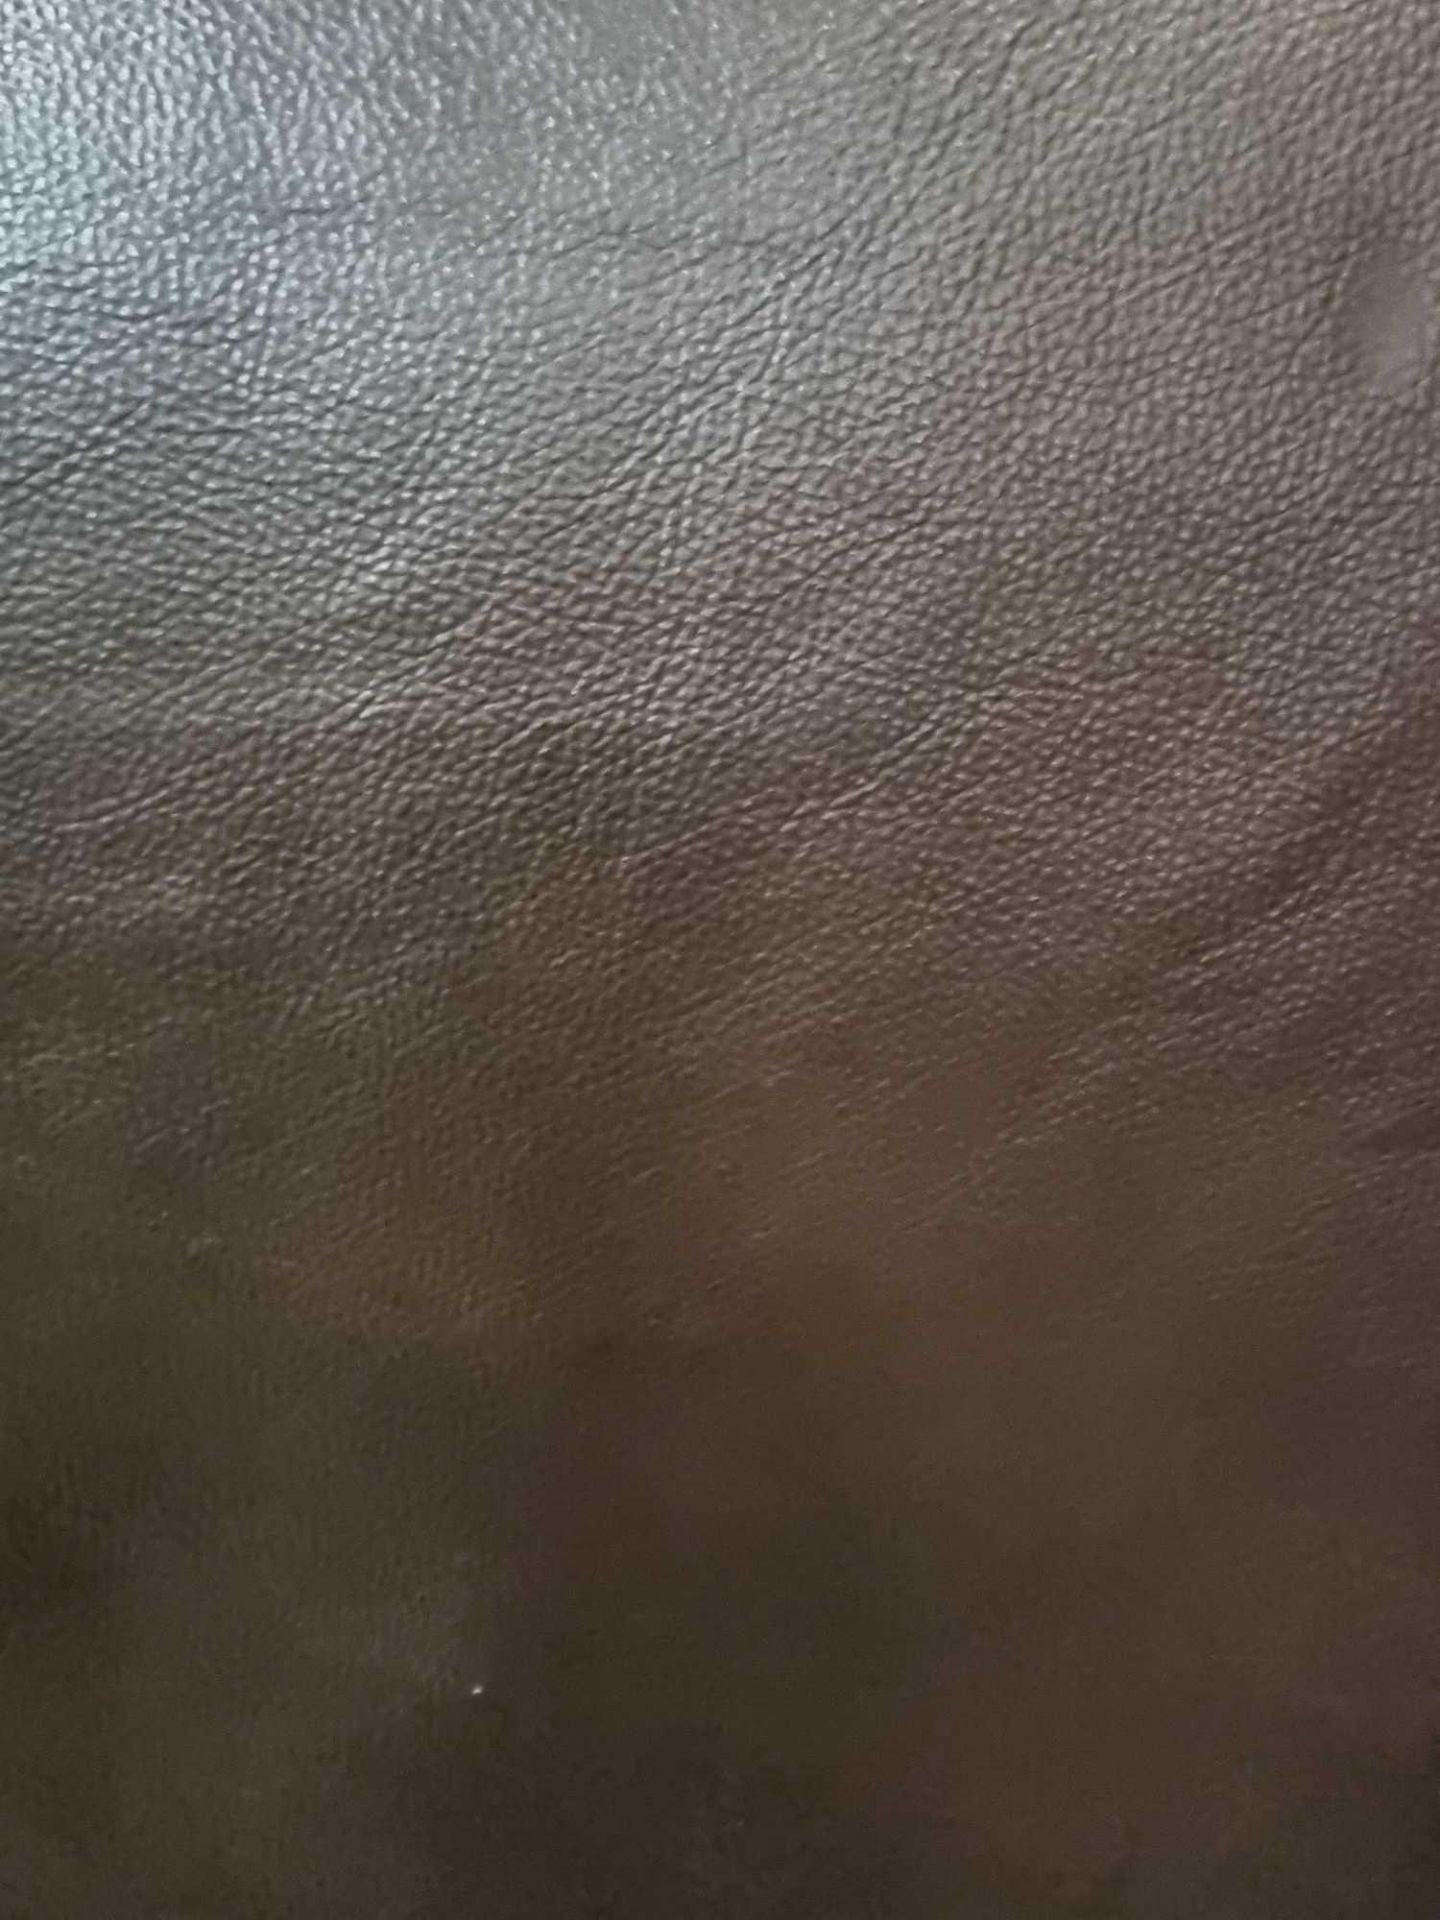 Chocolate Leather Hide approximately 2 4M2 2 x 1 2cm ( Hide No,165) - Bild 2 aus 2